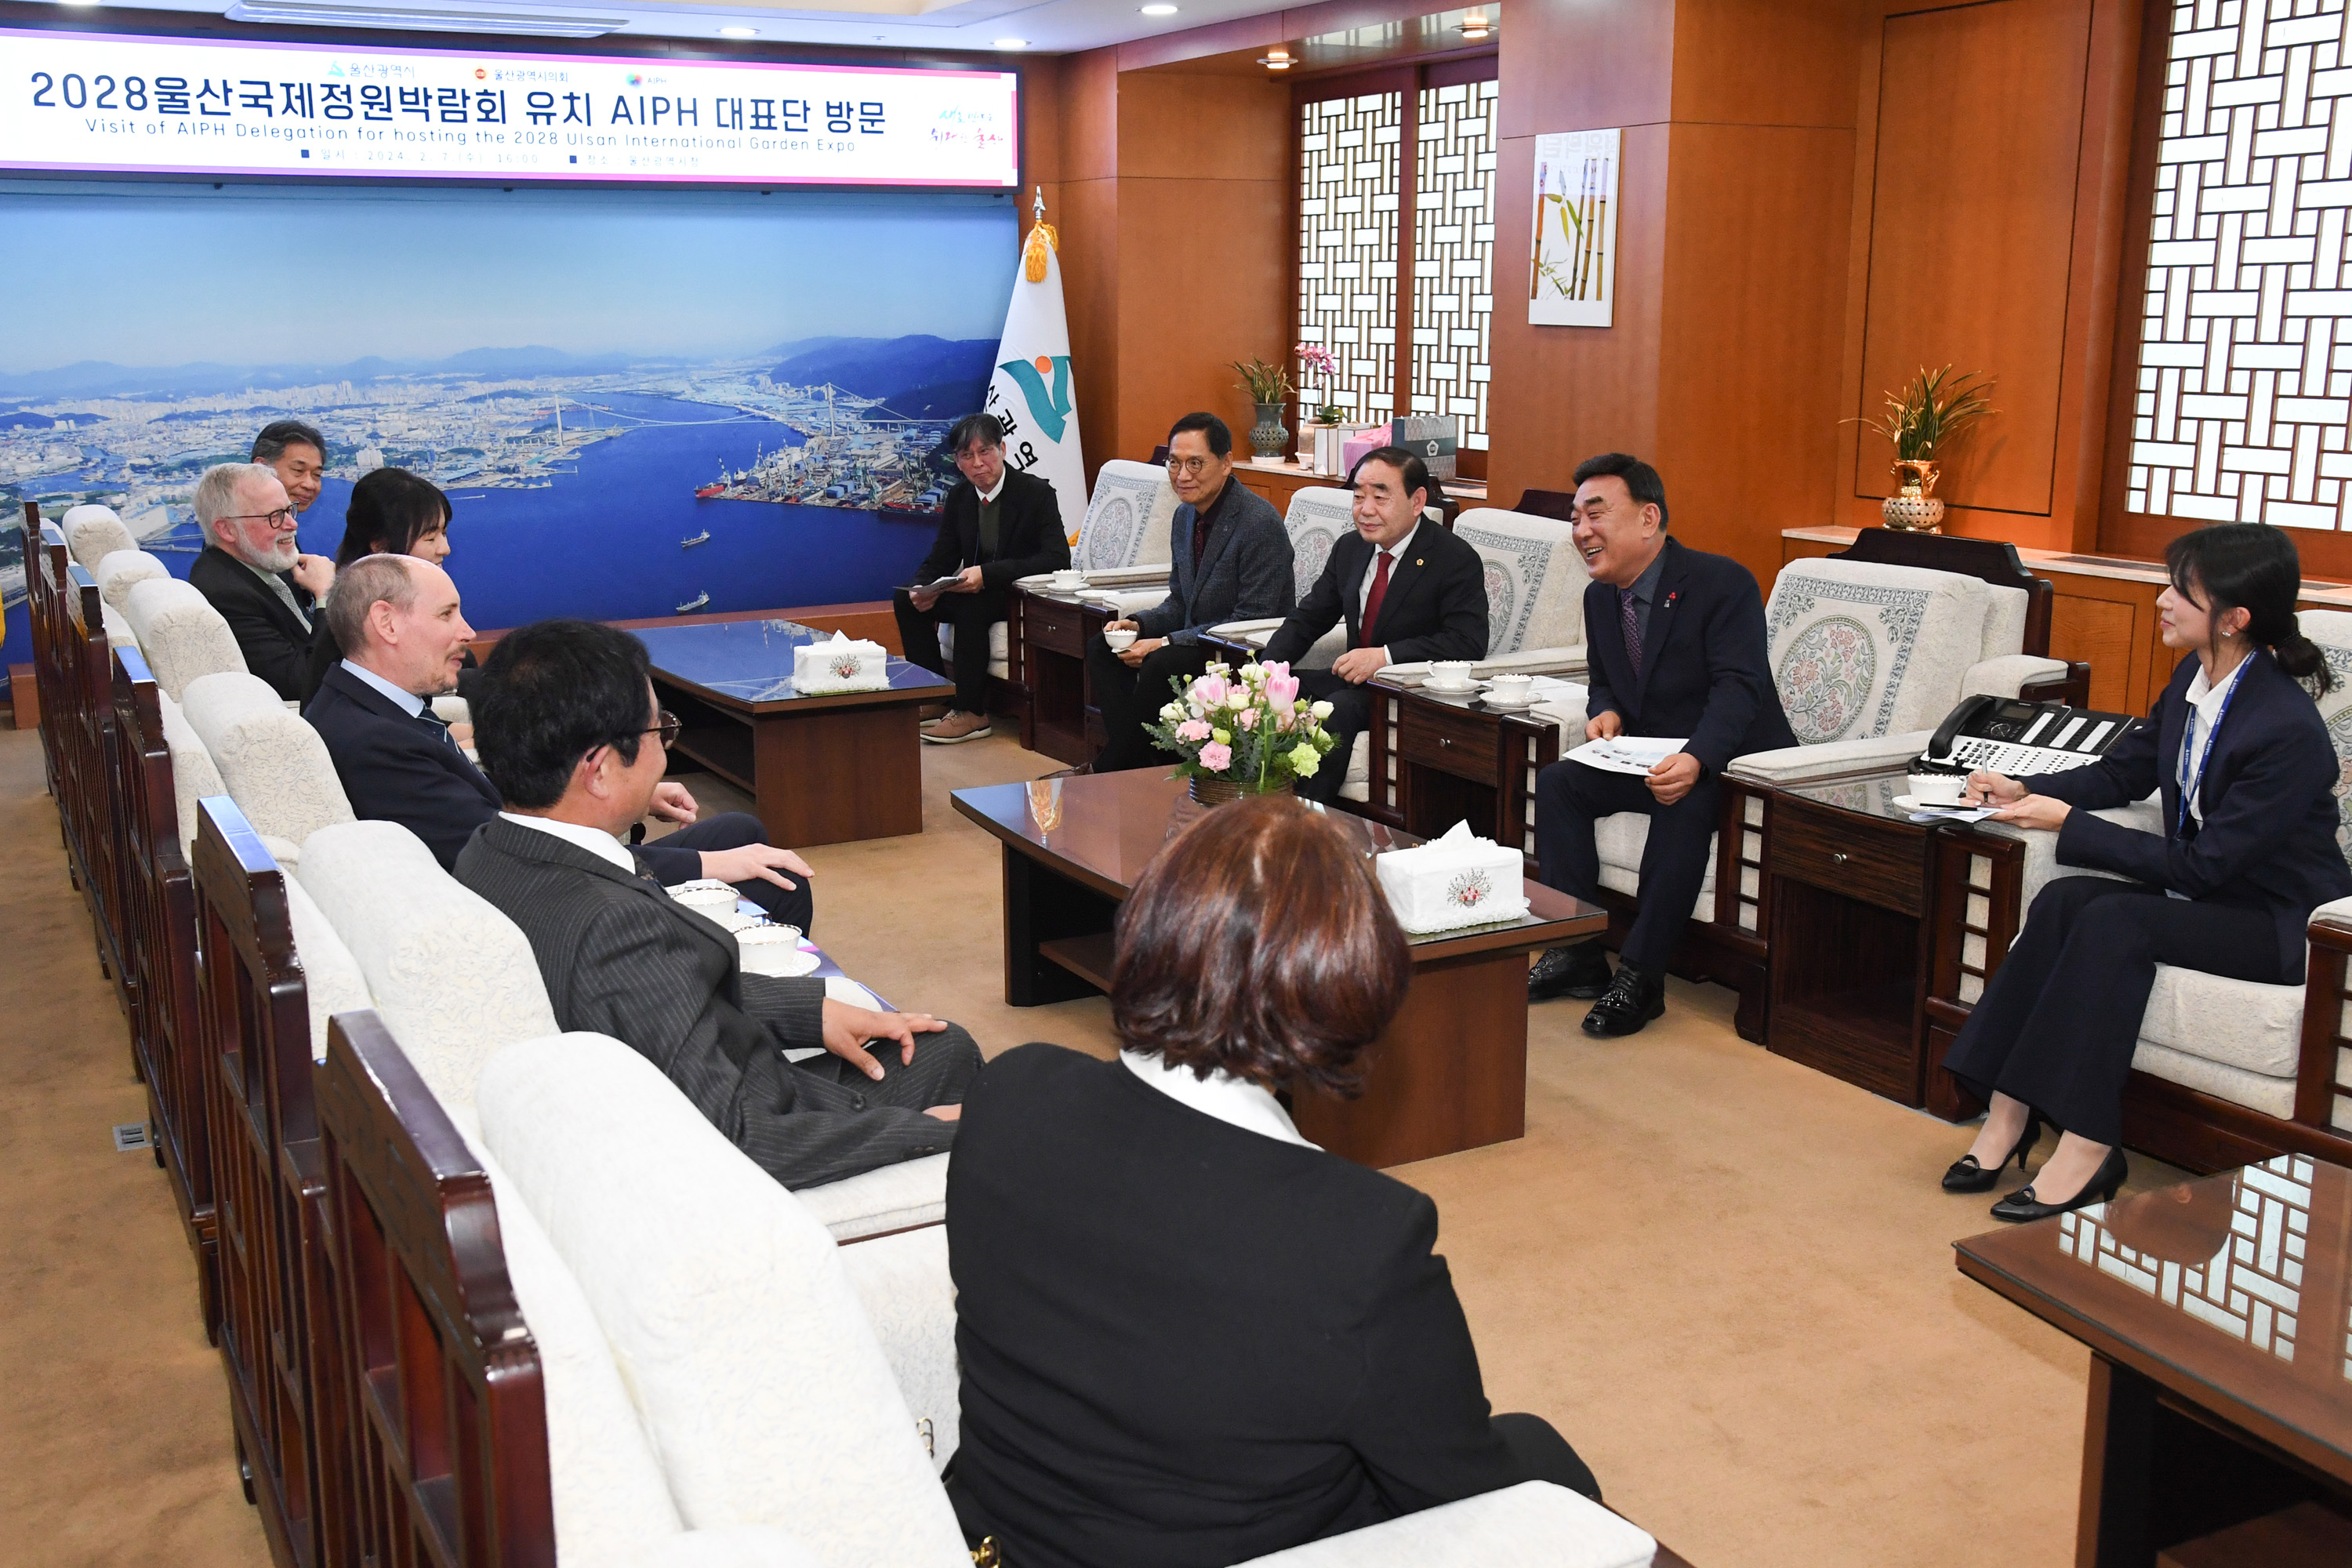 김기환 의장, 국제원예생산자협회(AIPH) 대표단 방문 환담2